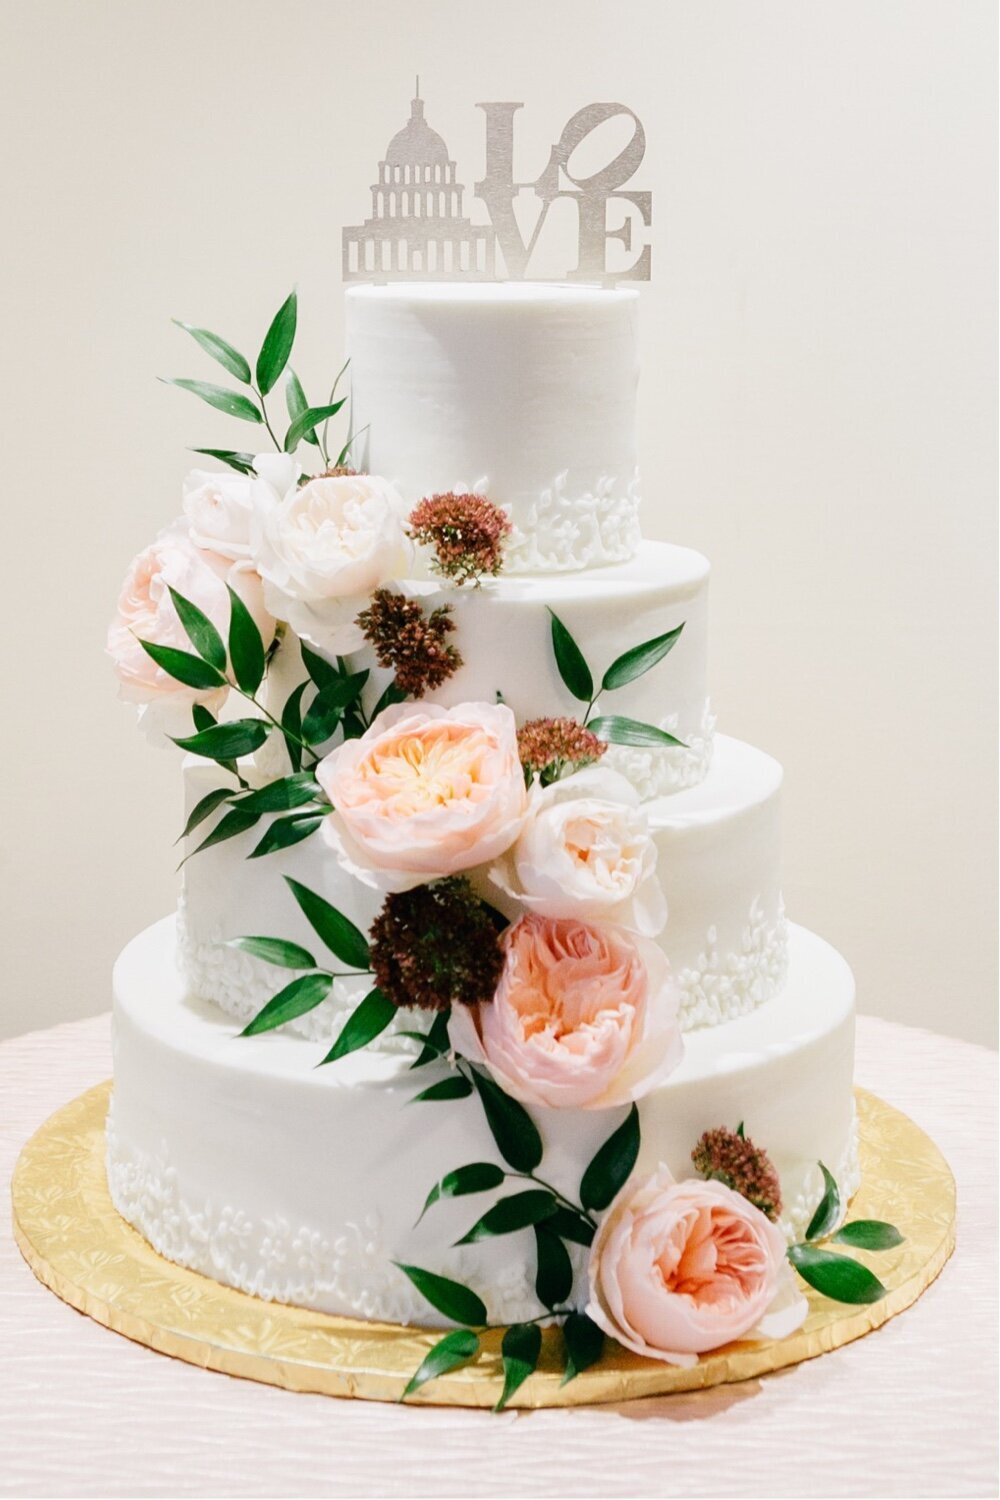 222_wedding-cake_white-wedding-cake-and-flowers